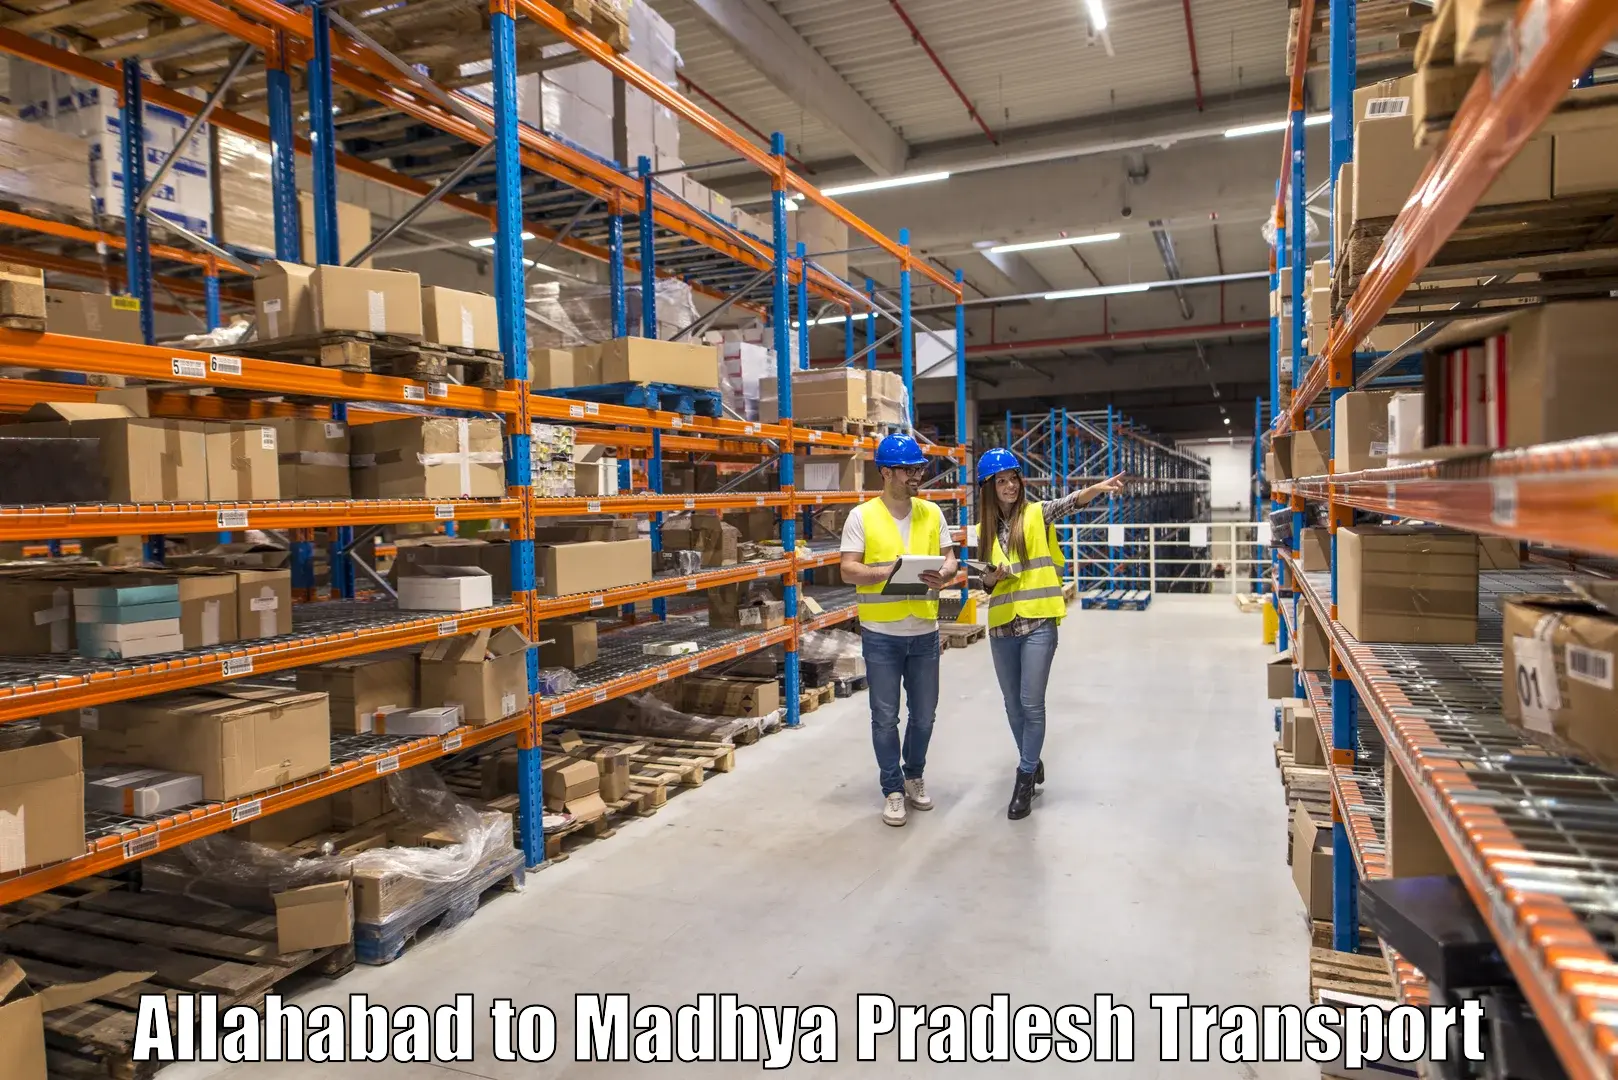 India truck logistics services Allahabad to Begumganj